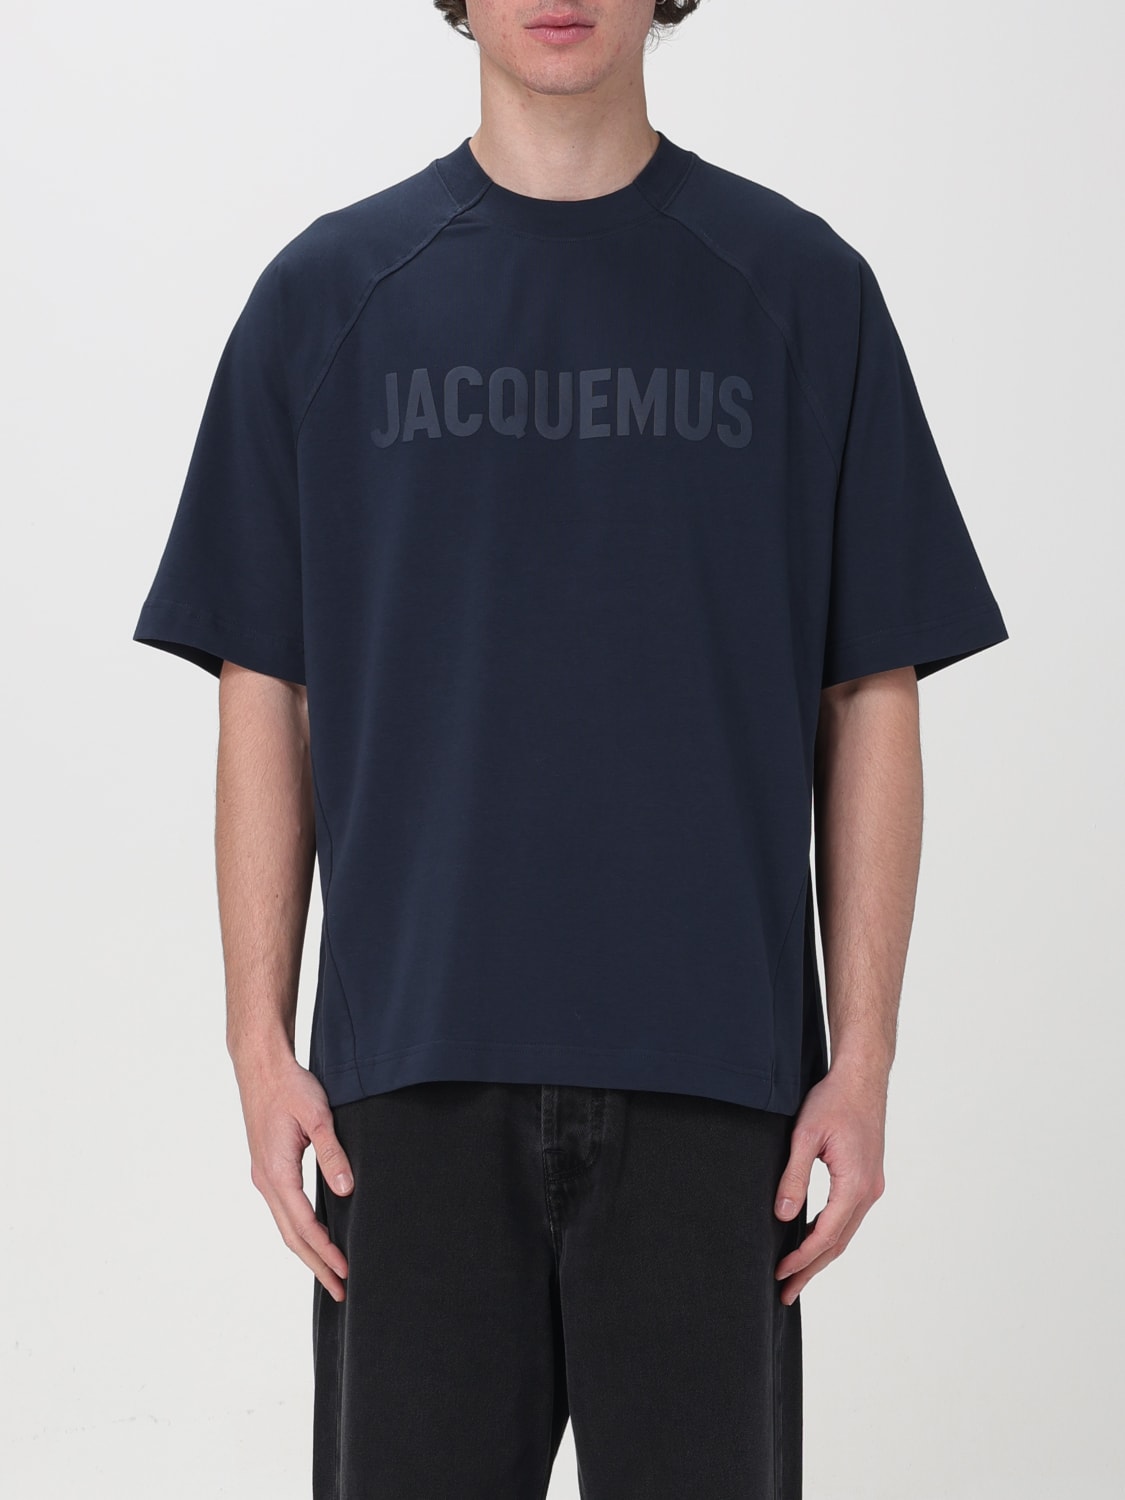 8,500円JACQUEMUS  Tシャツ